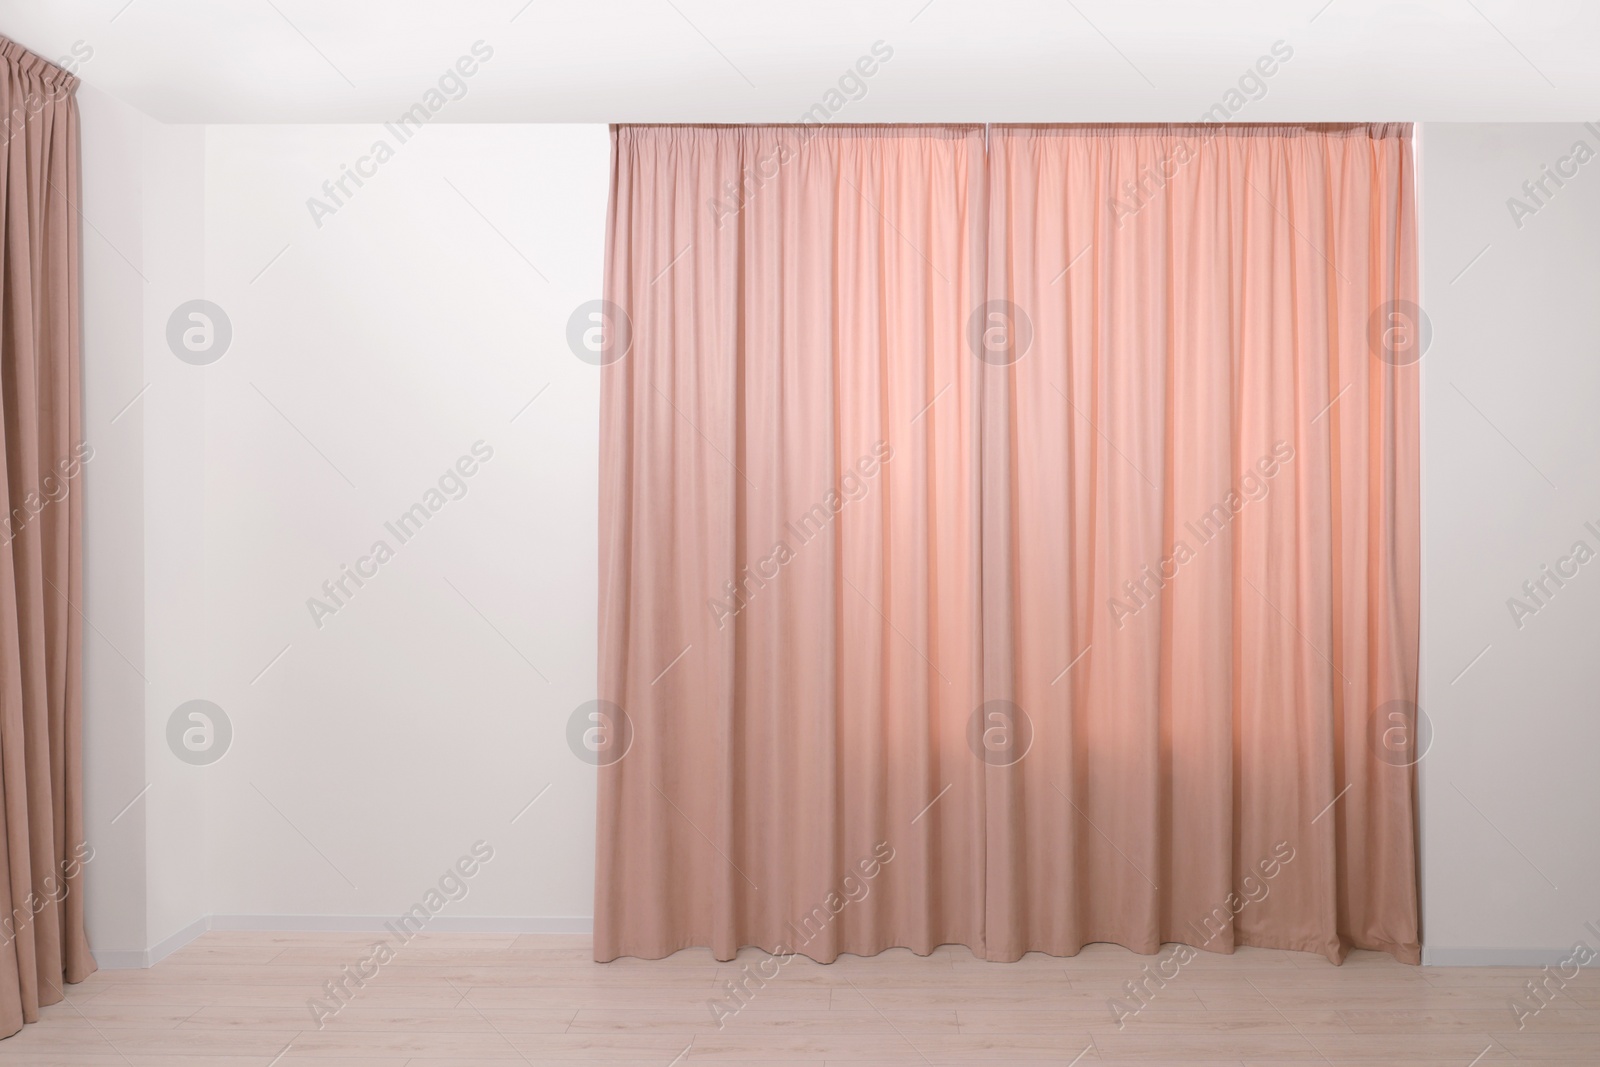 Photo of Elegant window curtains in room. Interior design